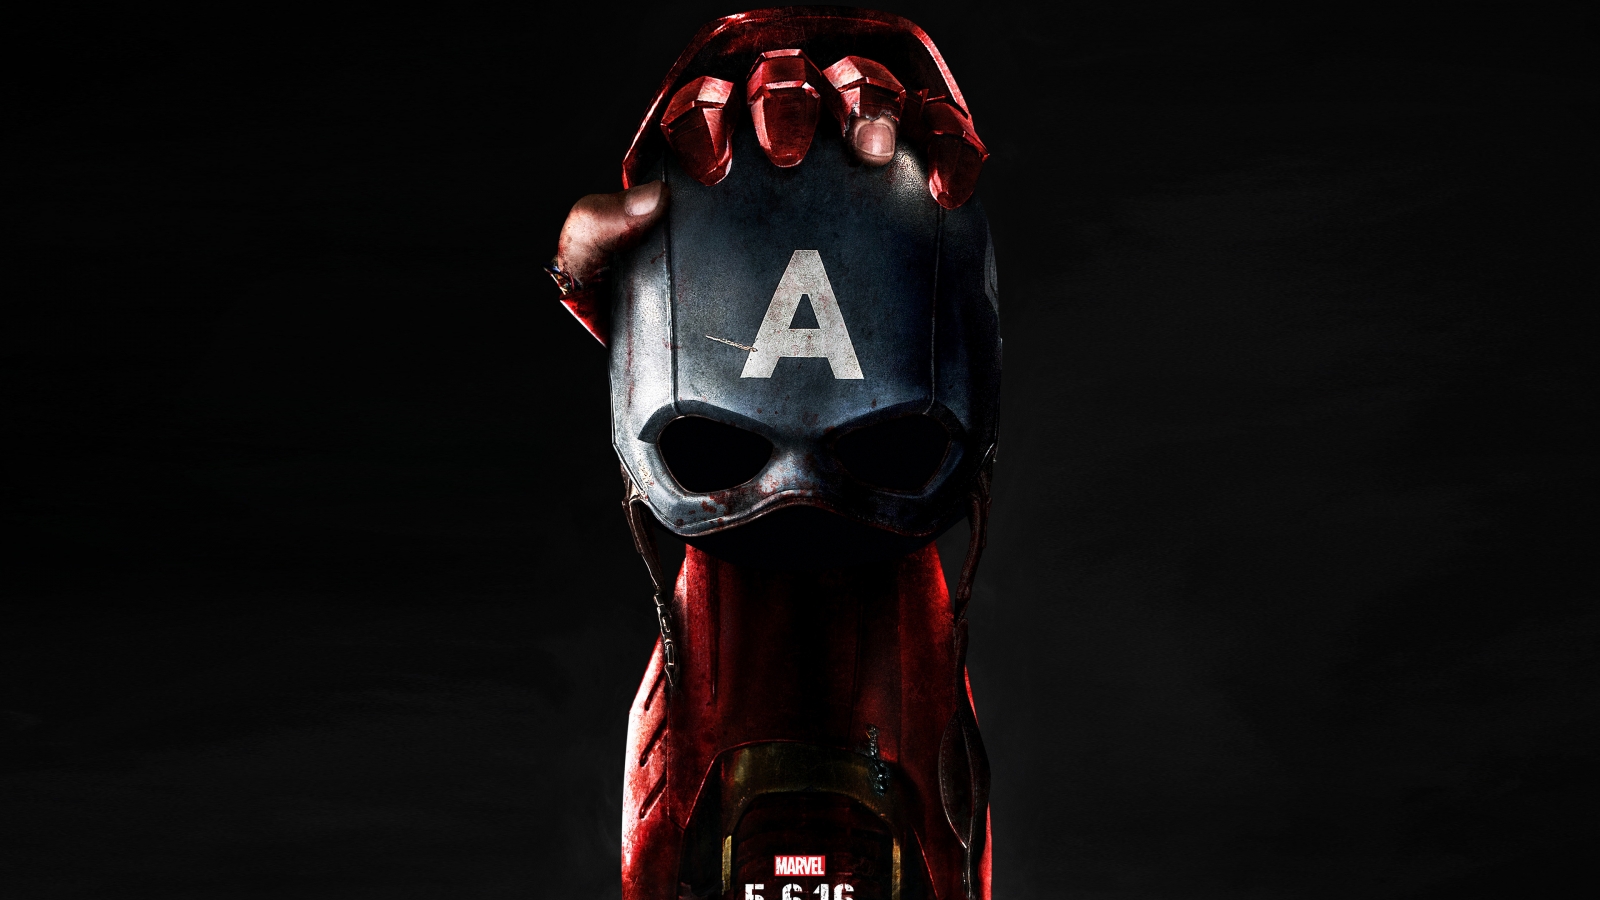 Captain America Civil War Poster 2016 for 1600 x 900 HDTV resolution